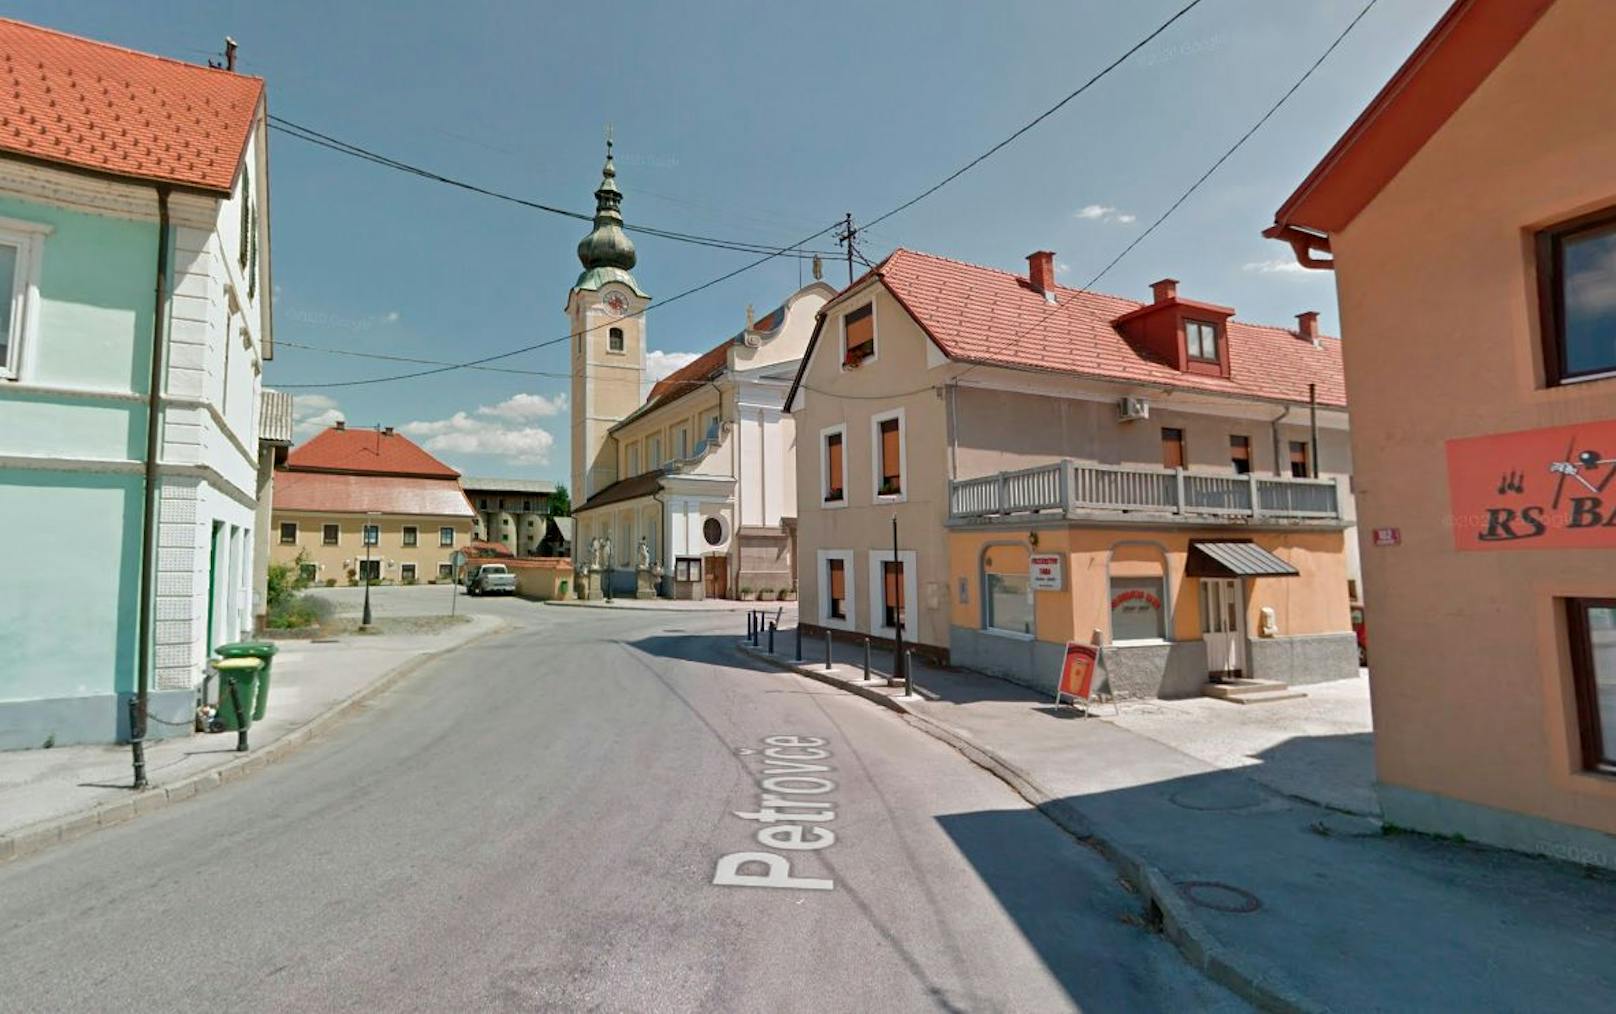 Im beschaulichen slowenische Örtchen Petrovče gibt es für Besucher nicht viel zu sehen, wohl aber zu riechen.